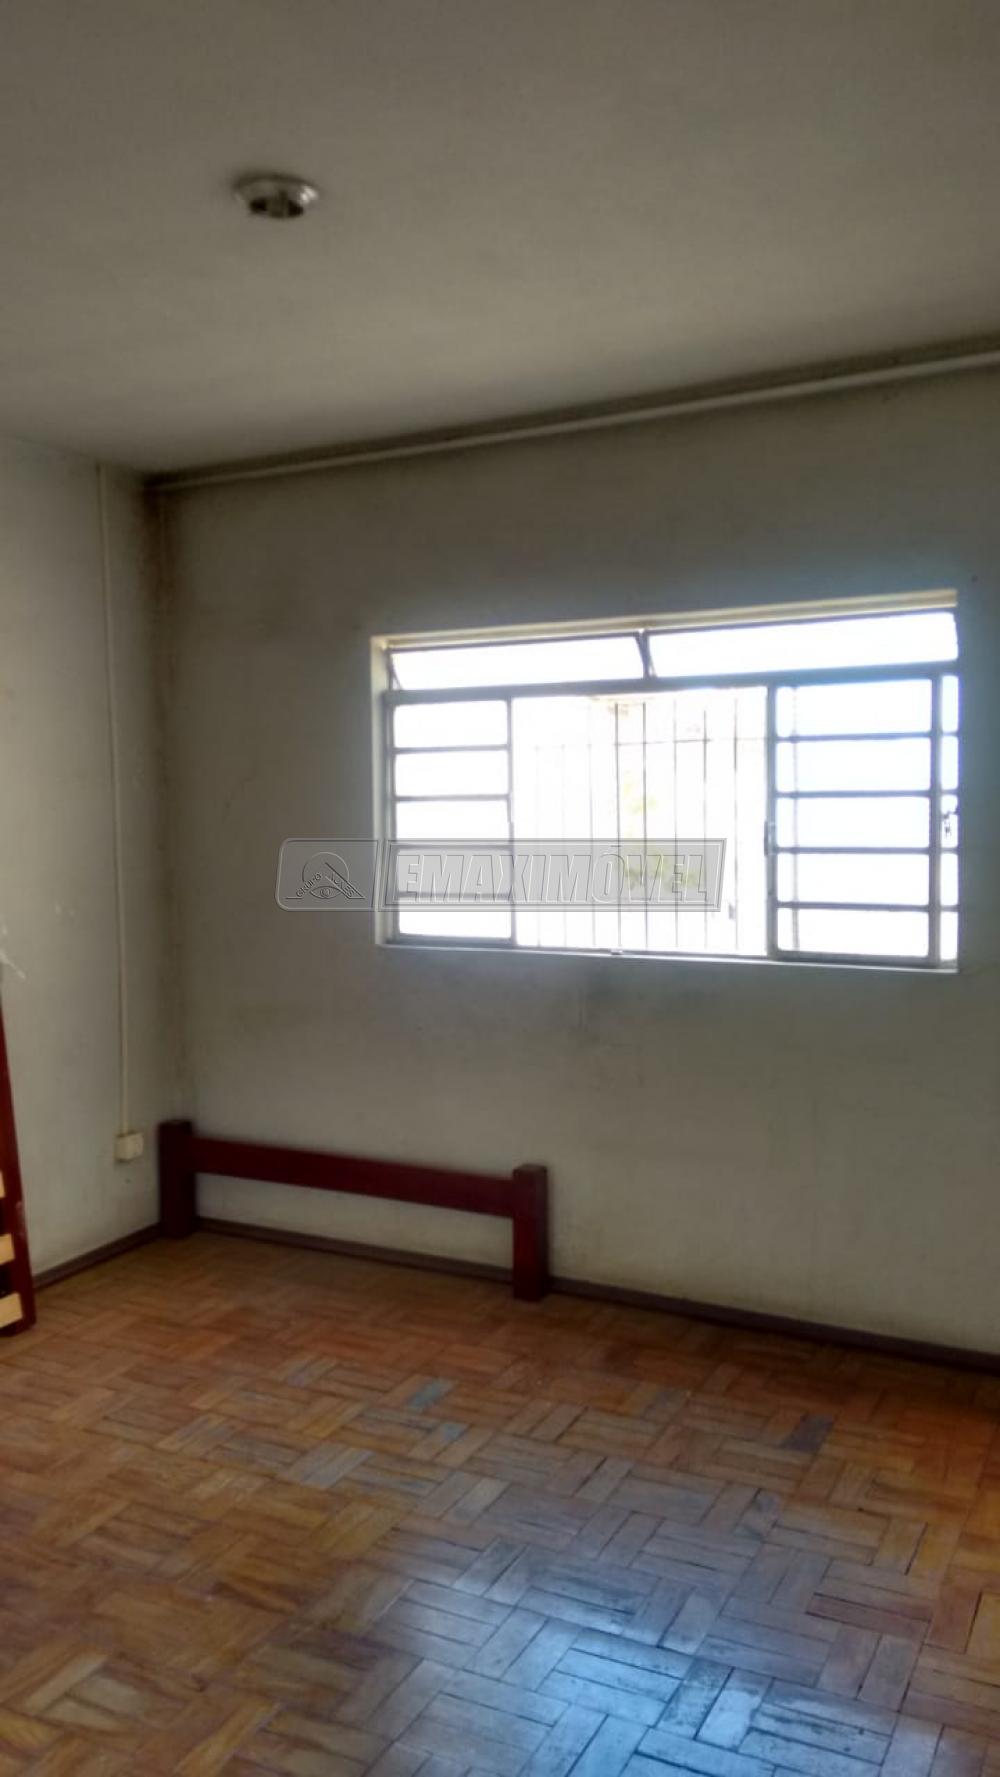 Comprar Casa / em Bairros em Sorocaba R$ 210.000,00 - Foto 5